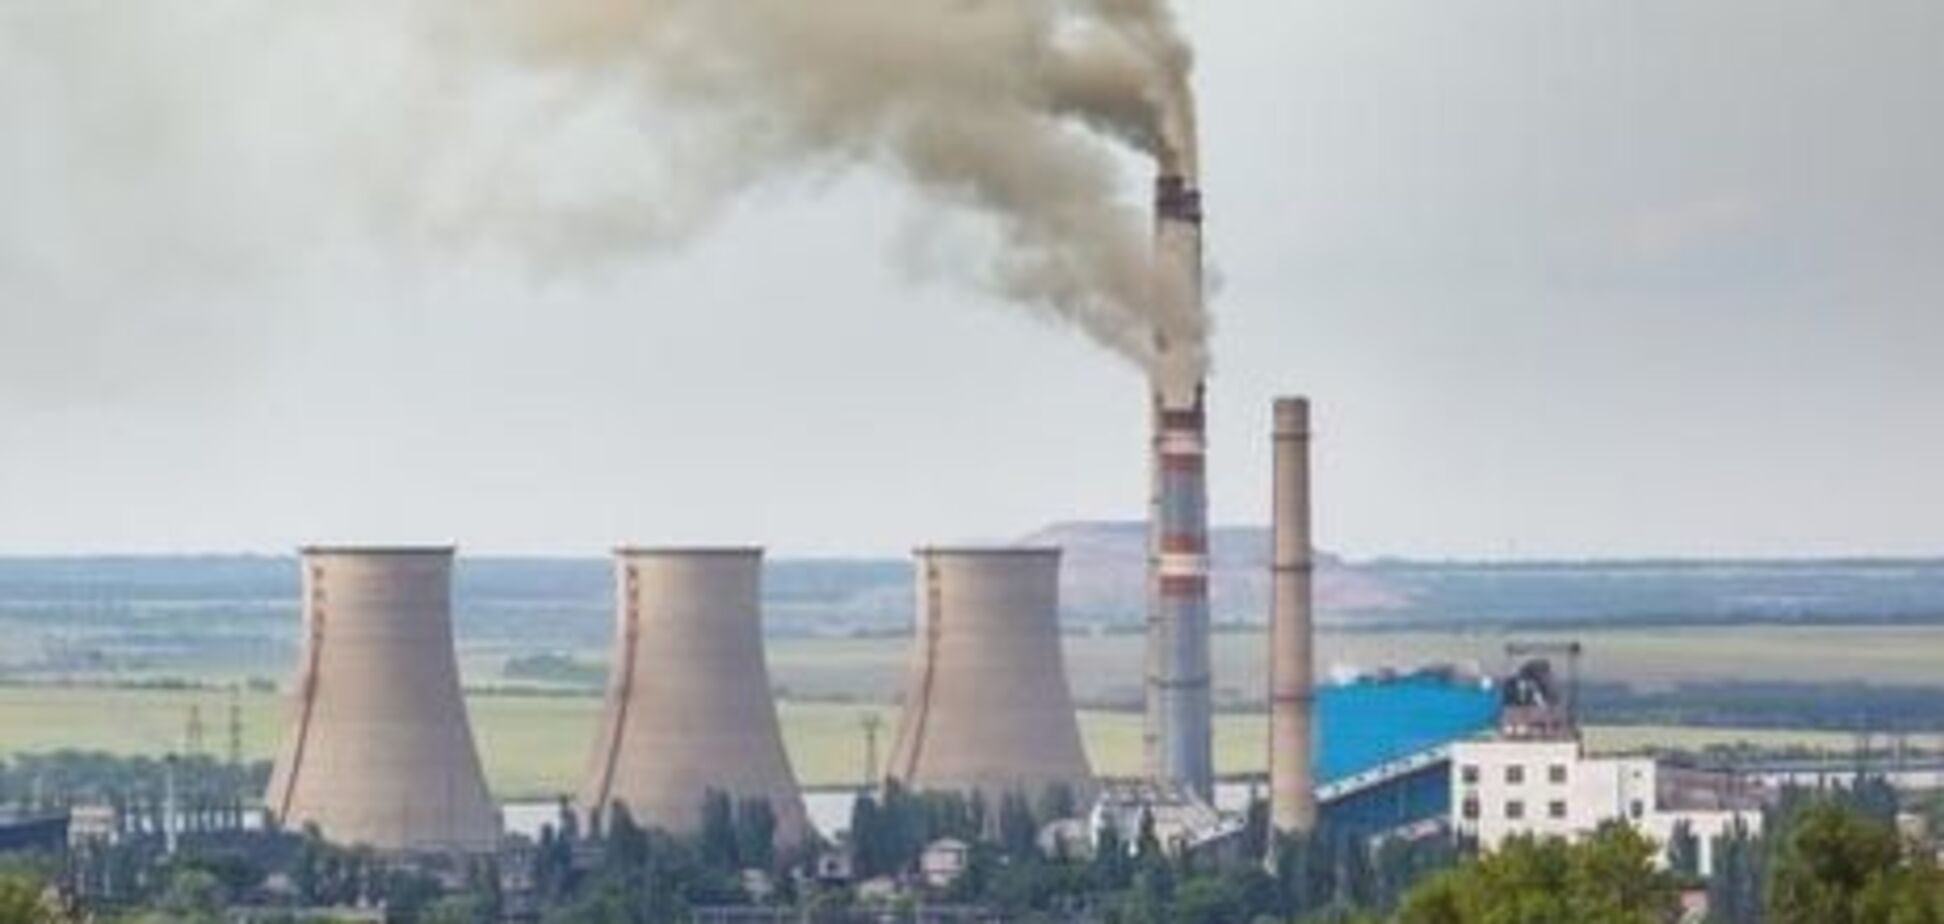 Использование нефтекокса на ТЭС спровоцирует сильное загрязнение воздуха - экологи  